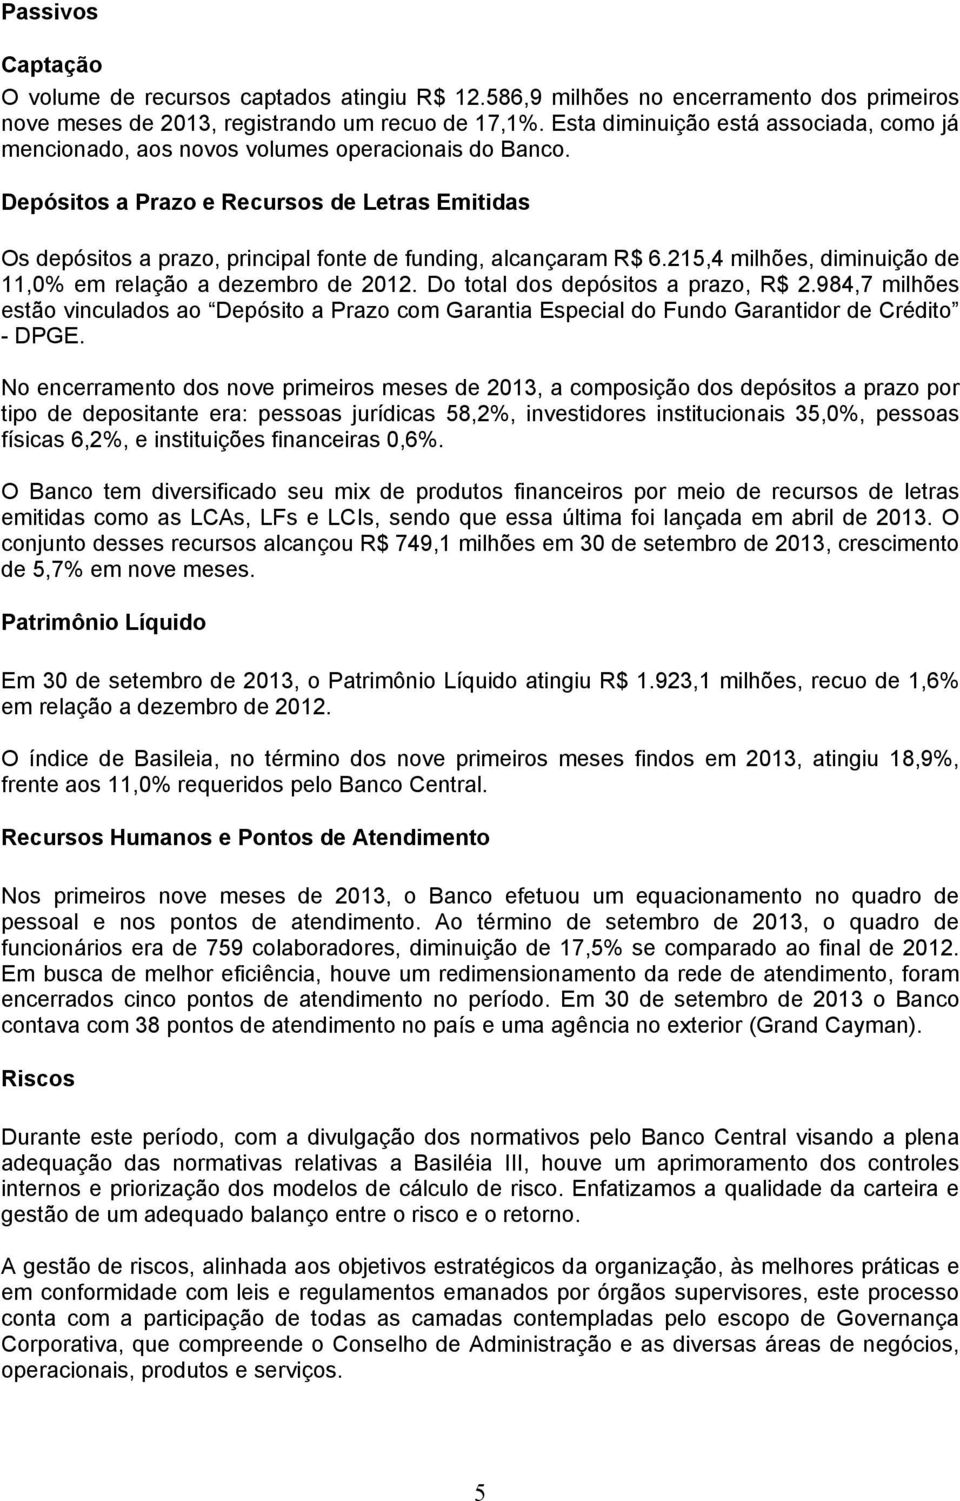 Depósitos a Prazo e Recursos de Letras Emitidas Os depósitos a prazo, principal fonte de funding, alcançaram R$ 6.215,4 milhões, diminuição de 11,0% em relação a dezembro de 2012.